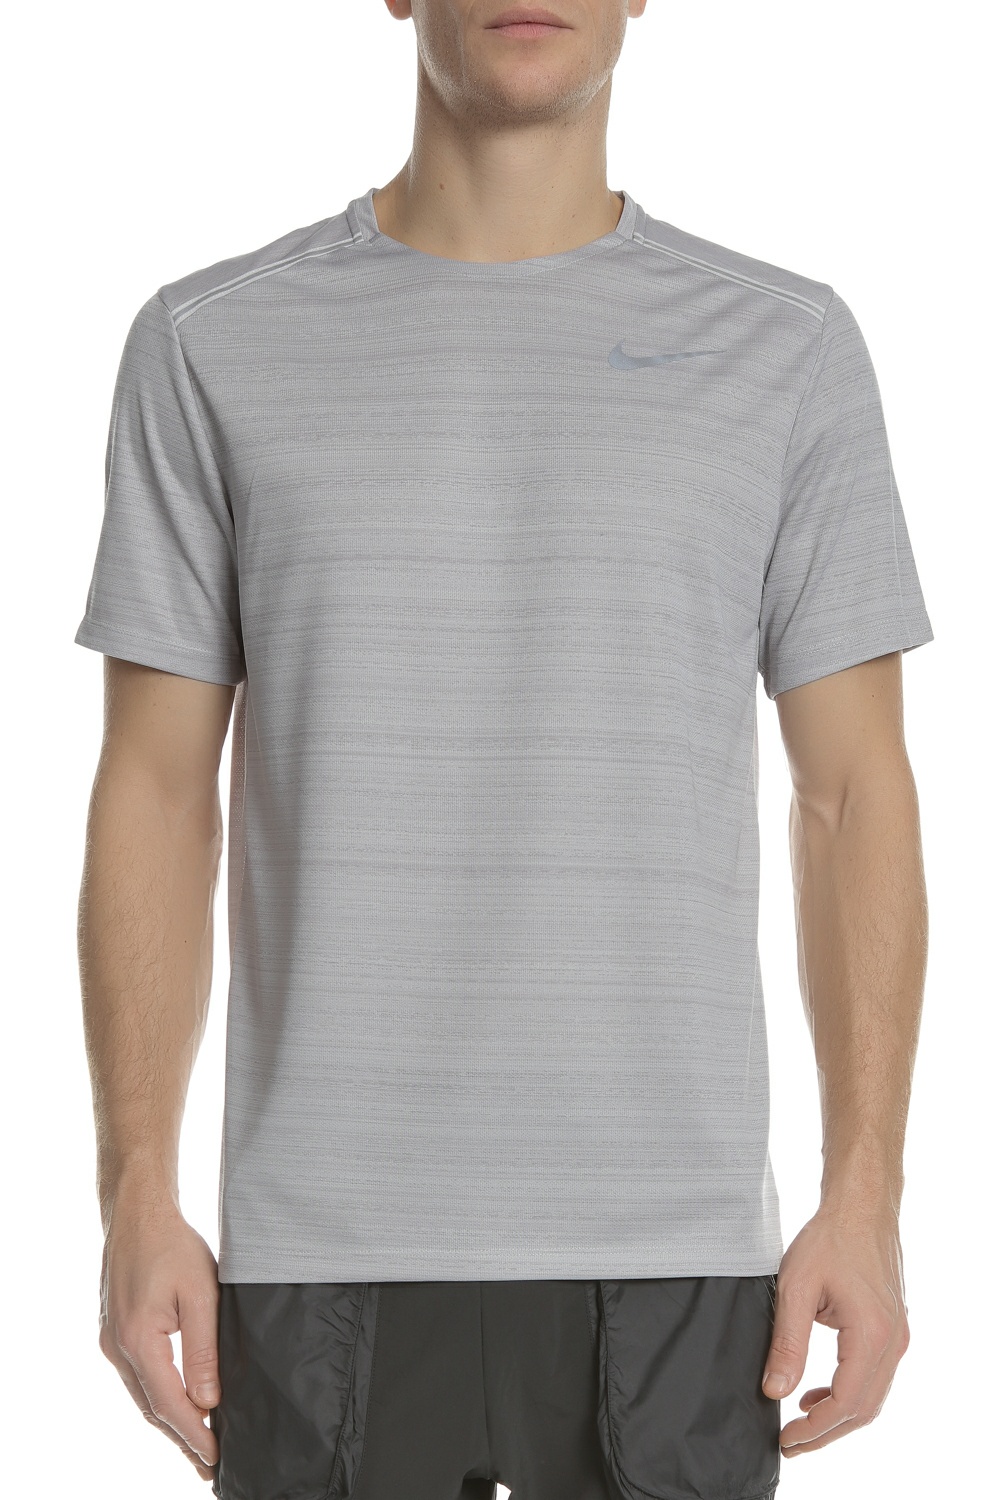 Ανδρικά/Ρούχα/Αθλητικά/T-shirt NIKE - Ανδρική κοντομάνικη μπλούζα Nike Dri-FIT Miler γκρι